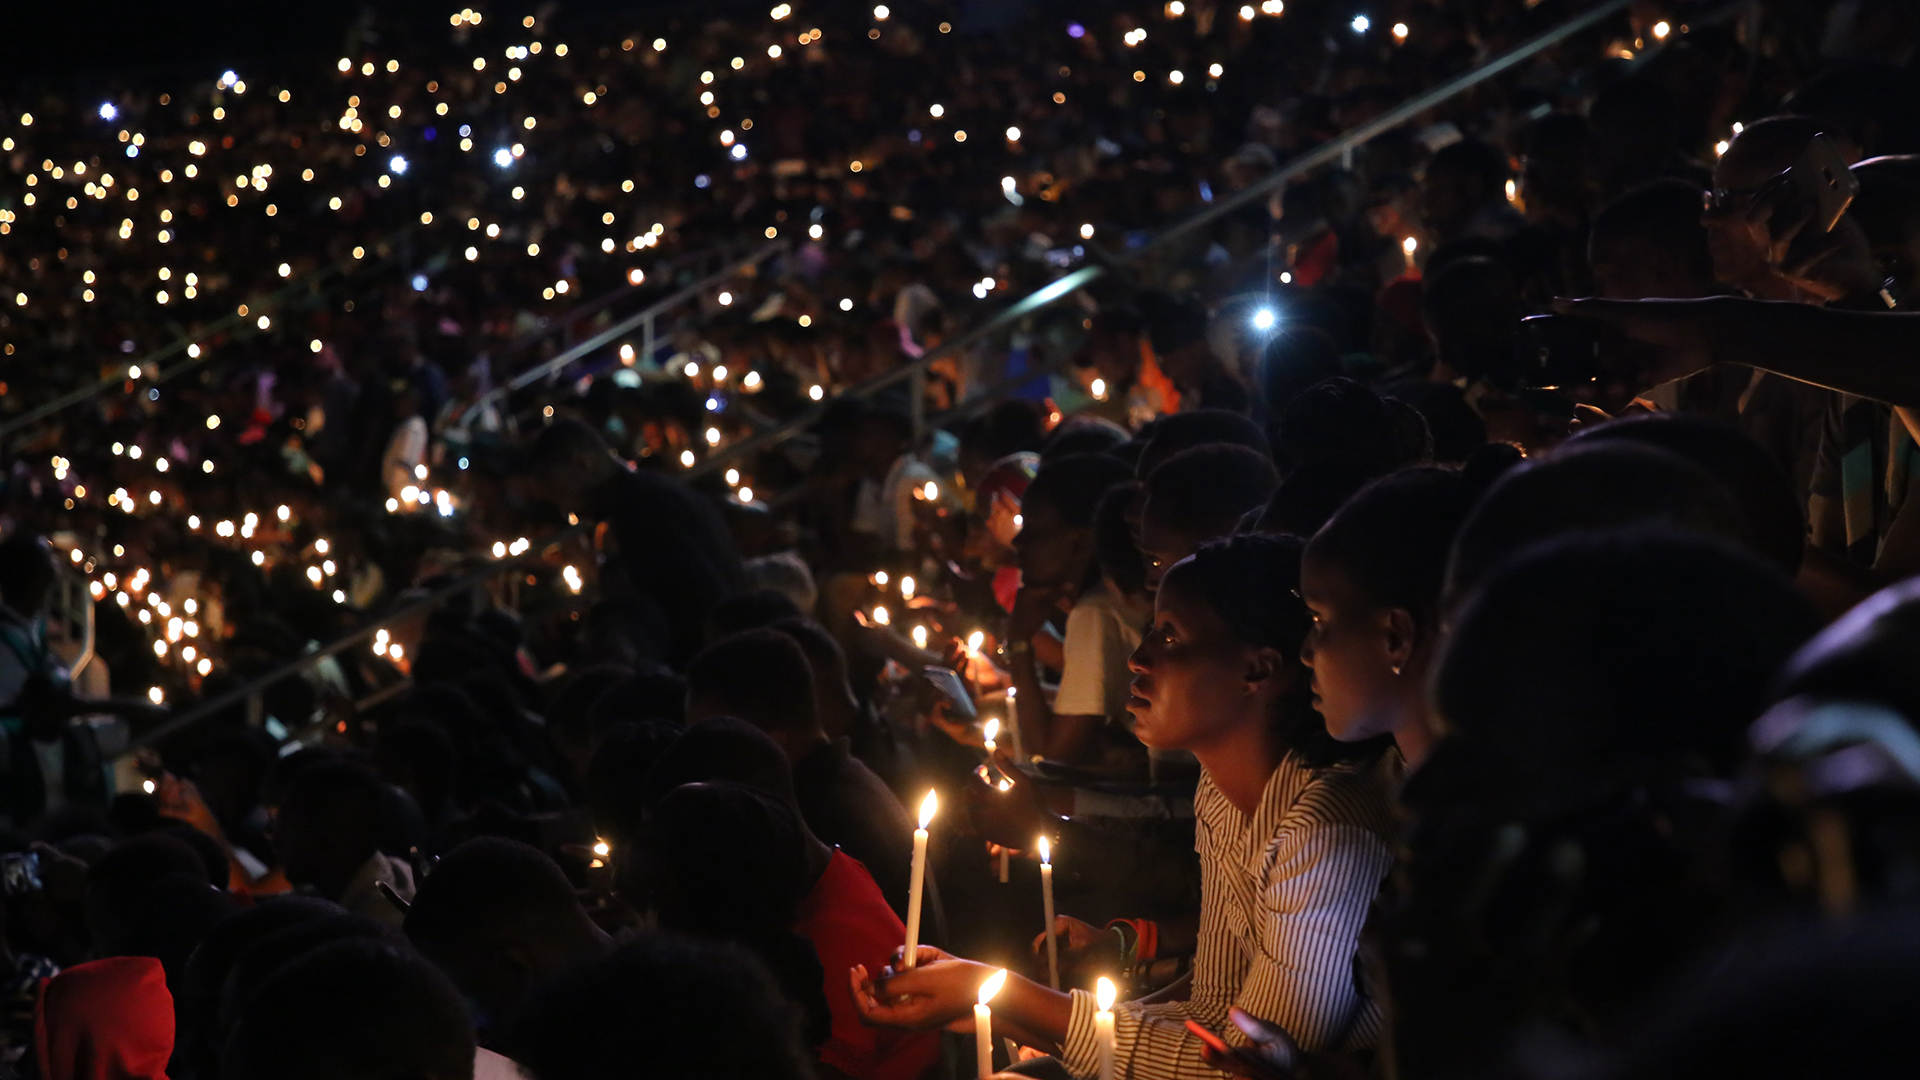 Menschen halten Kerzen während einer Gedenkfeier zum Jahrestag des Völkermords in Ruanda im Amahoro Stadion. (Archivbild: 07.04.2019) | picture alliance/dpa/XinHua